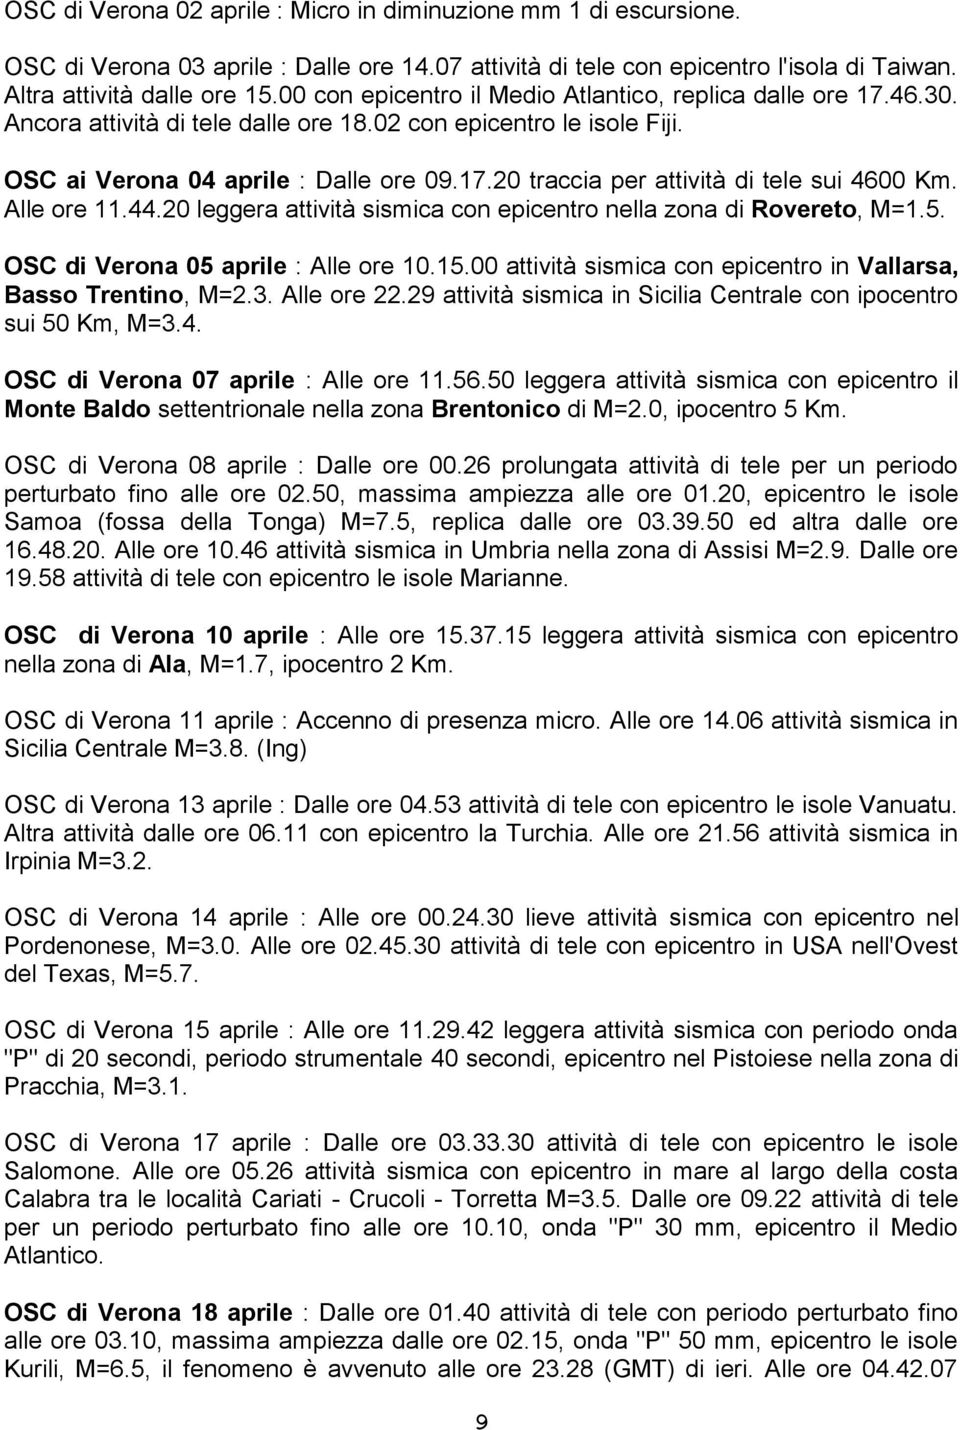 Alle ore 11.44.20 leggera attività sismica con epicentro nella zona di Rovereto, M=1.5. OSC di Verona 05 aprile : Alle ore 10.15.00 attività sismica con epicentro in Vallarsa, Basso Trentino, M=2.3.